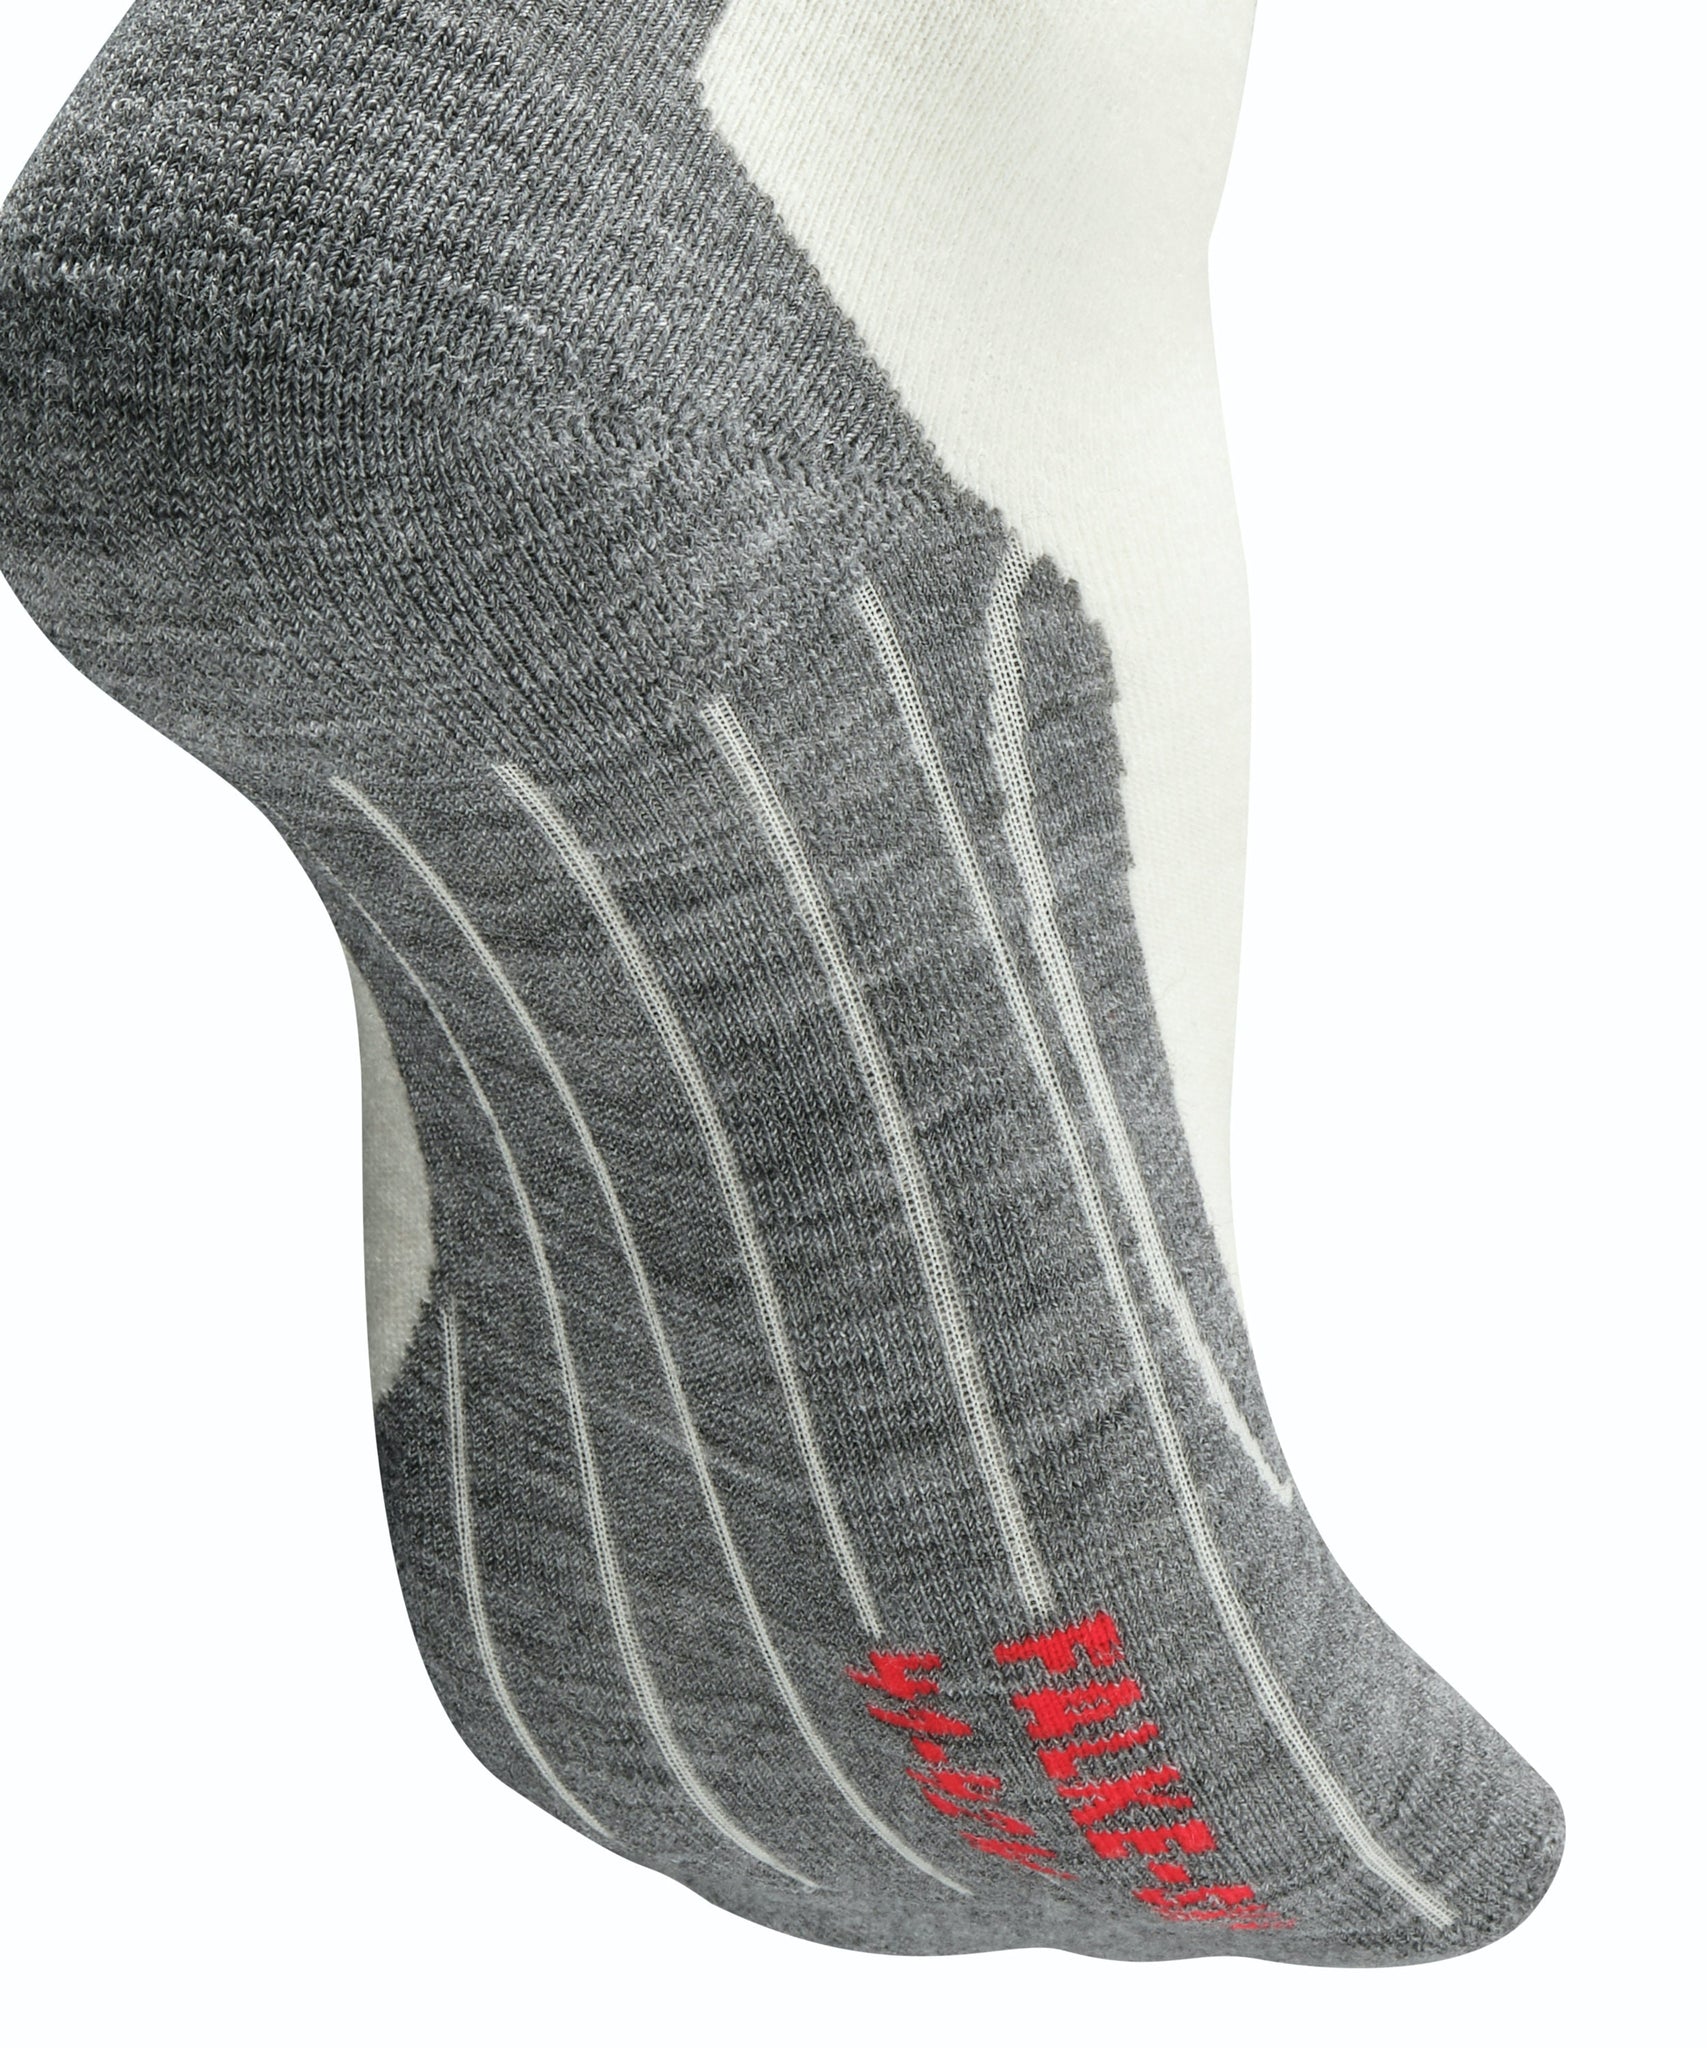 Falke SK4 Women's Ski Socks - Sale! Buy One, Get One 25% Off